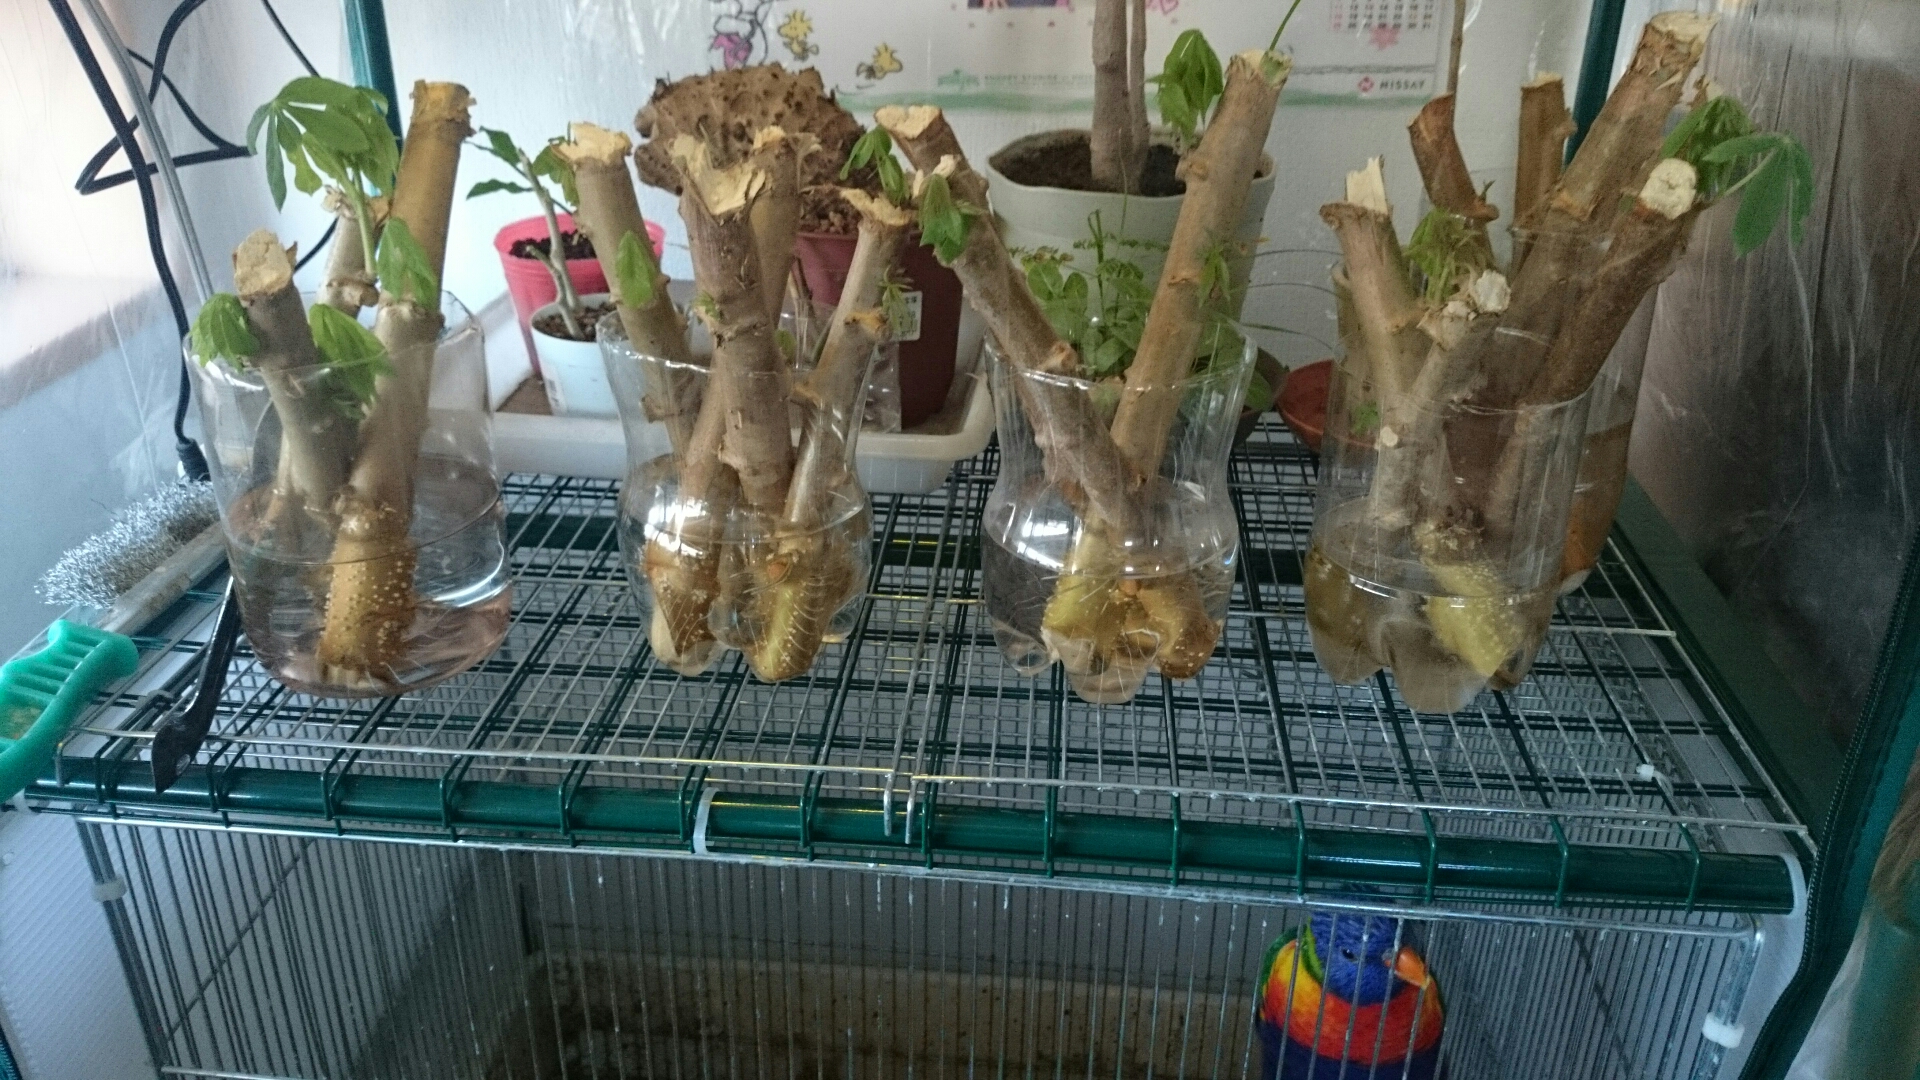 キャッサバ 芽か伸びてきた フィリピンの熱帯植物を育ててみた